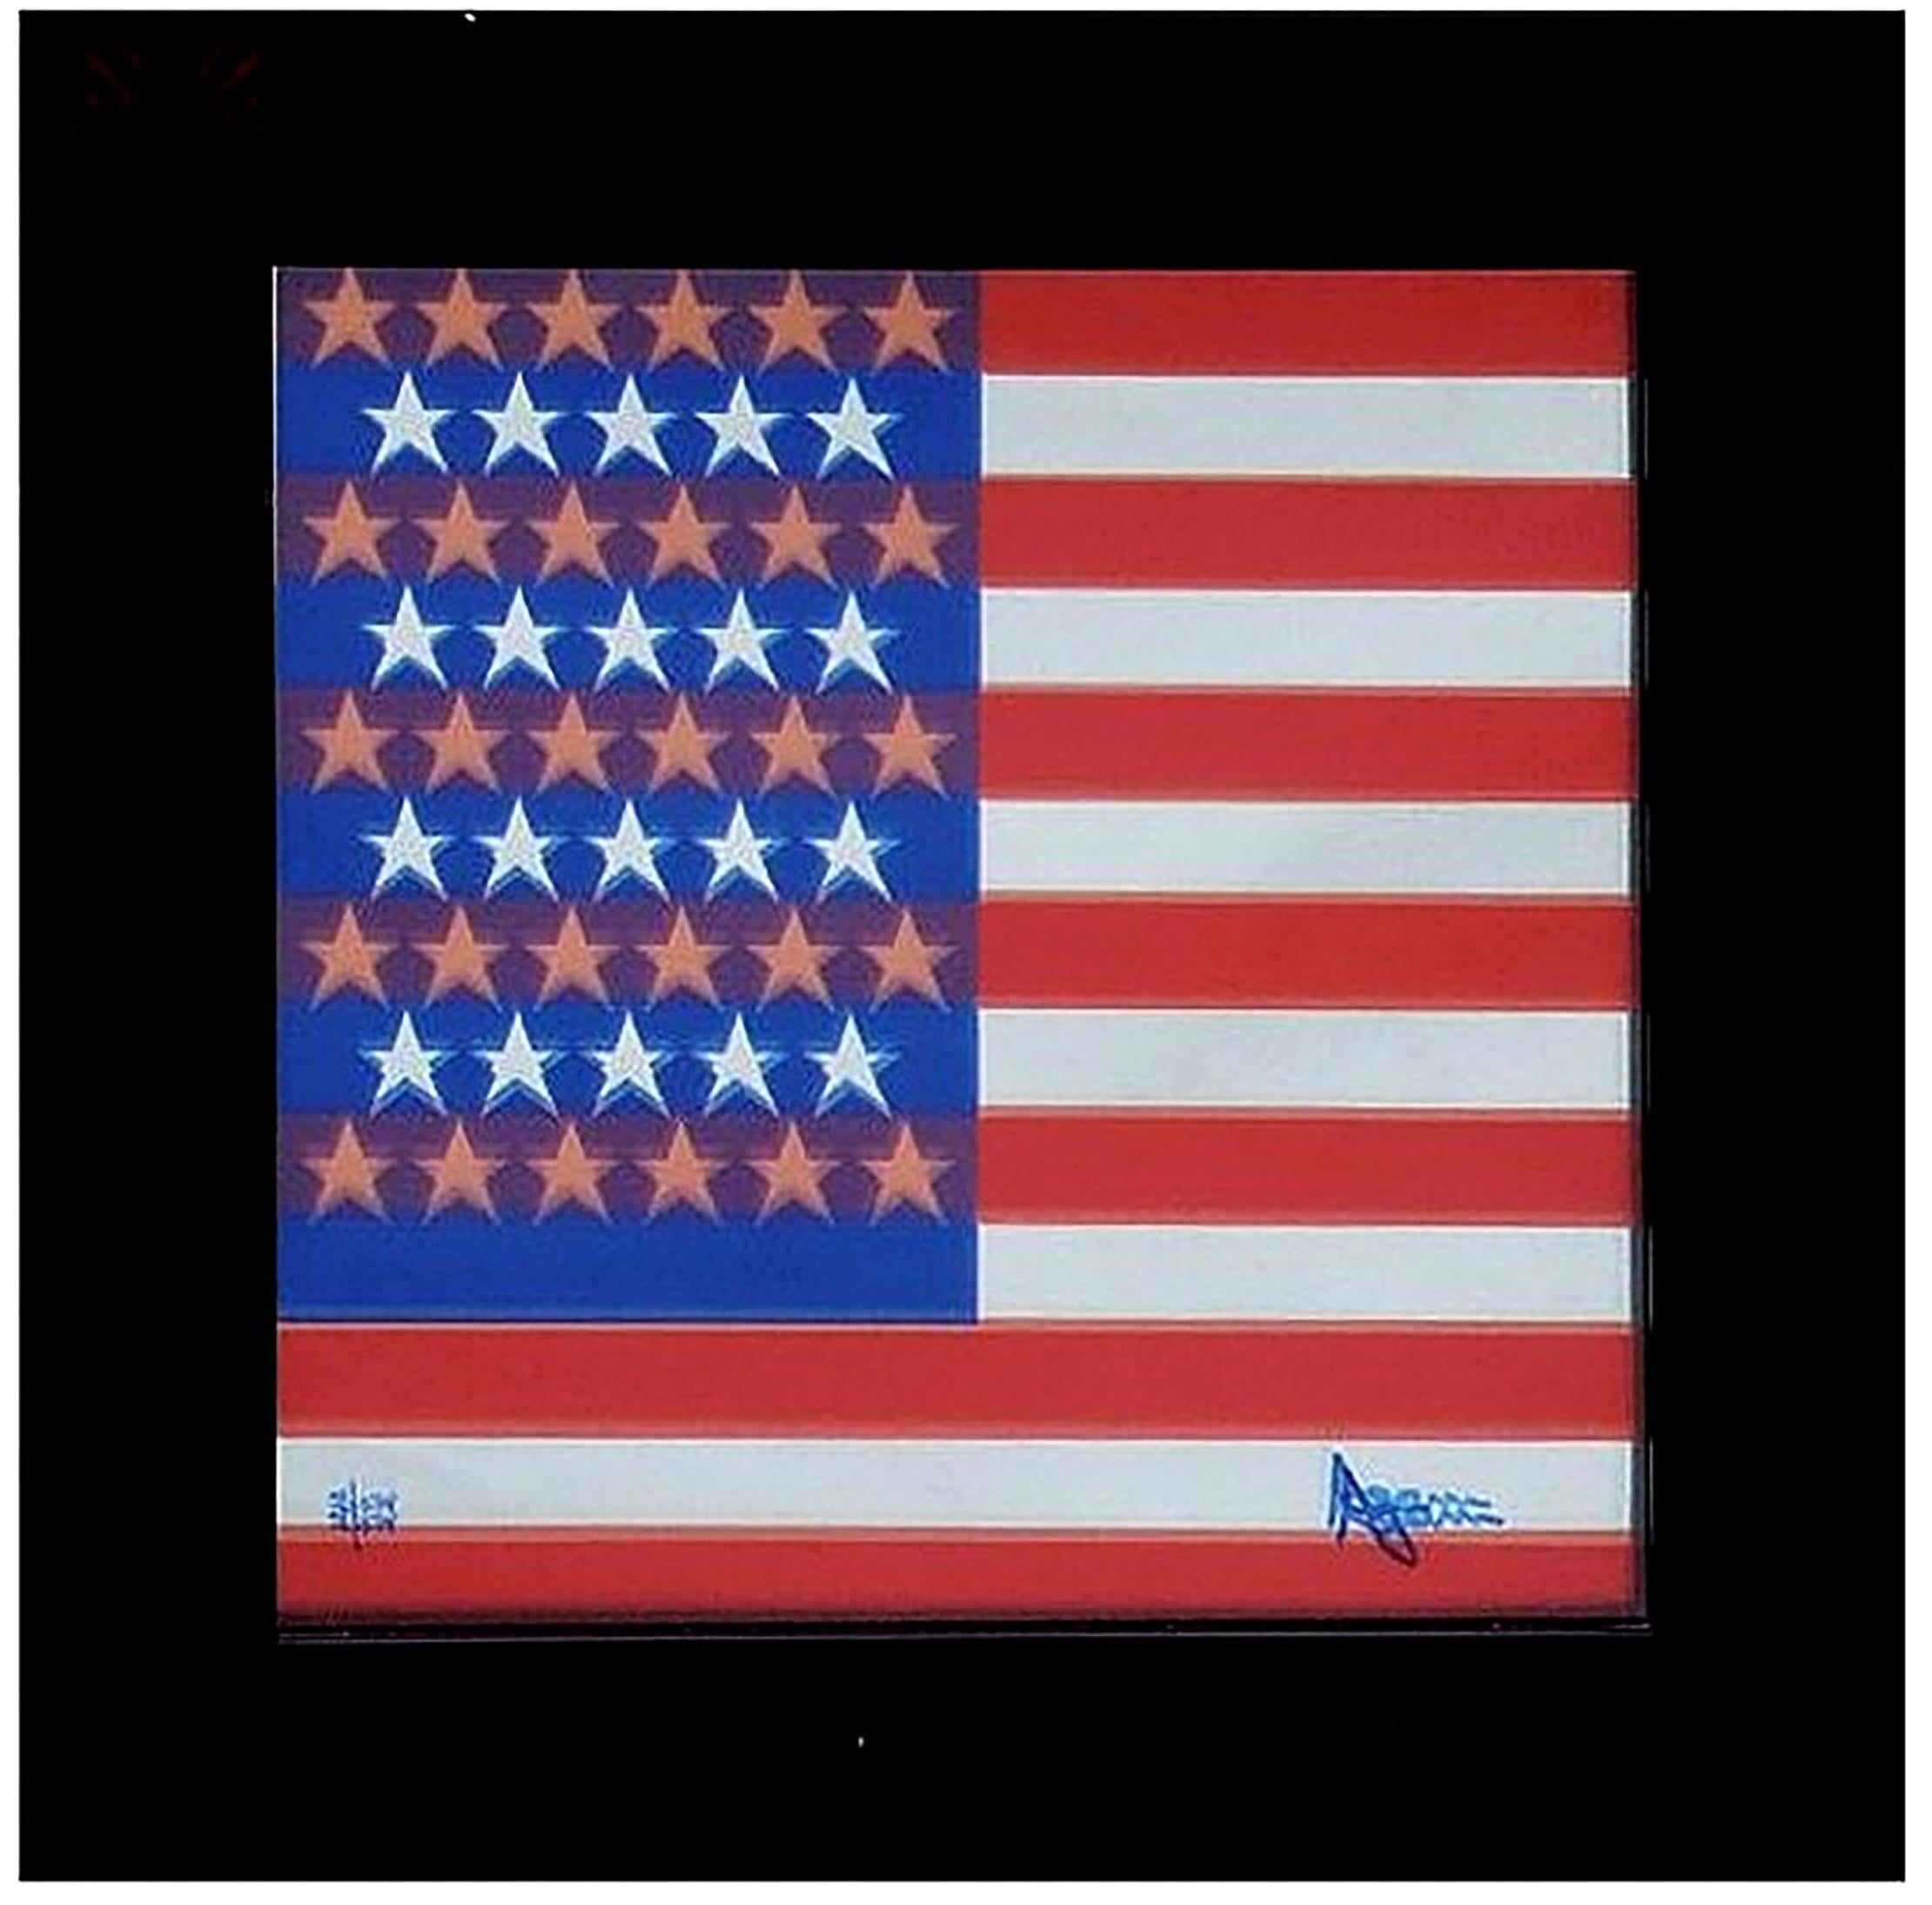 Agam - AMERICAN FLAG
1976
Das Werk wurde anlässlich der Zweihundertjahrfeier der Vereinigten Staaten realisiert!
Siebdruck auf Spiegel / Agamograph
Signiert mit Filzstift 22/75 